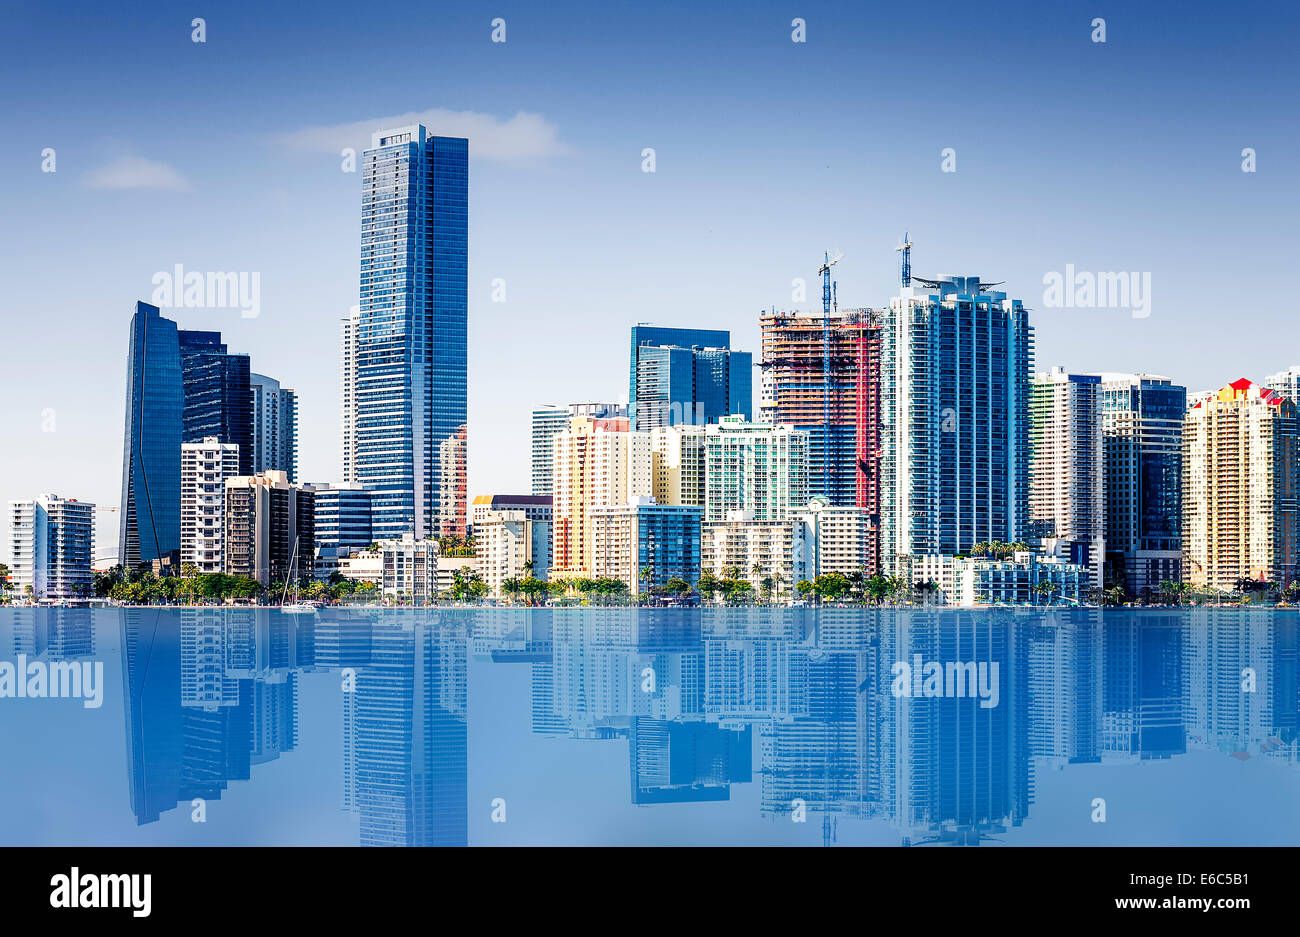 Miami South Beach, vue de l'entrée du port canal, Floride, USA. Banque D'Images